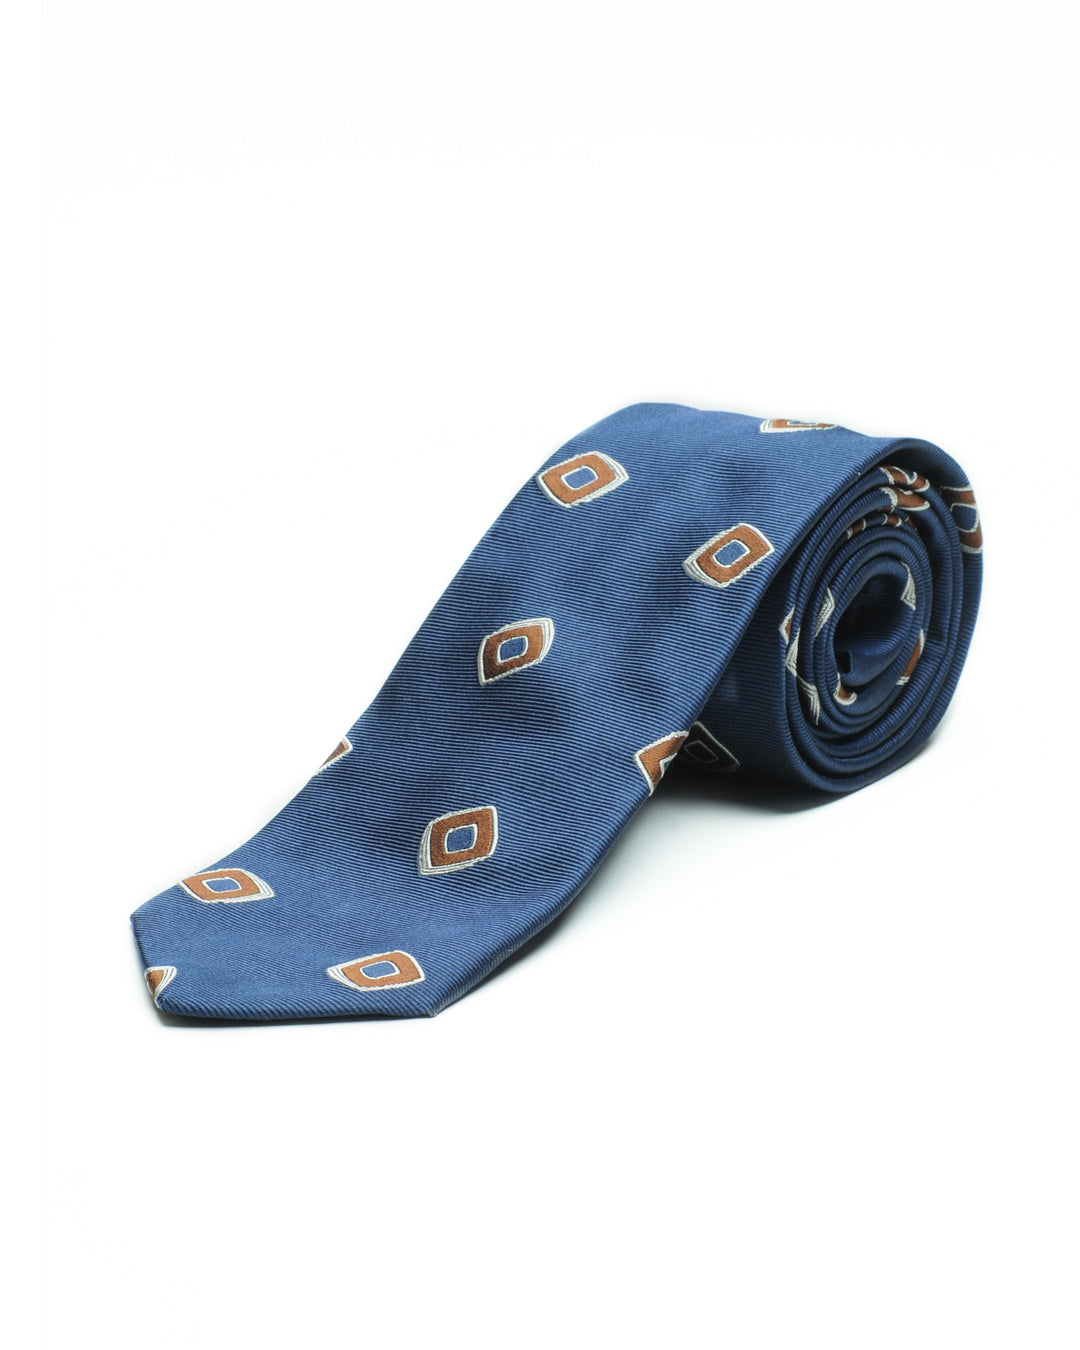 Cravatta jacquard motivo geometrico navy, avorio e tabacco